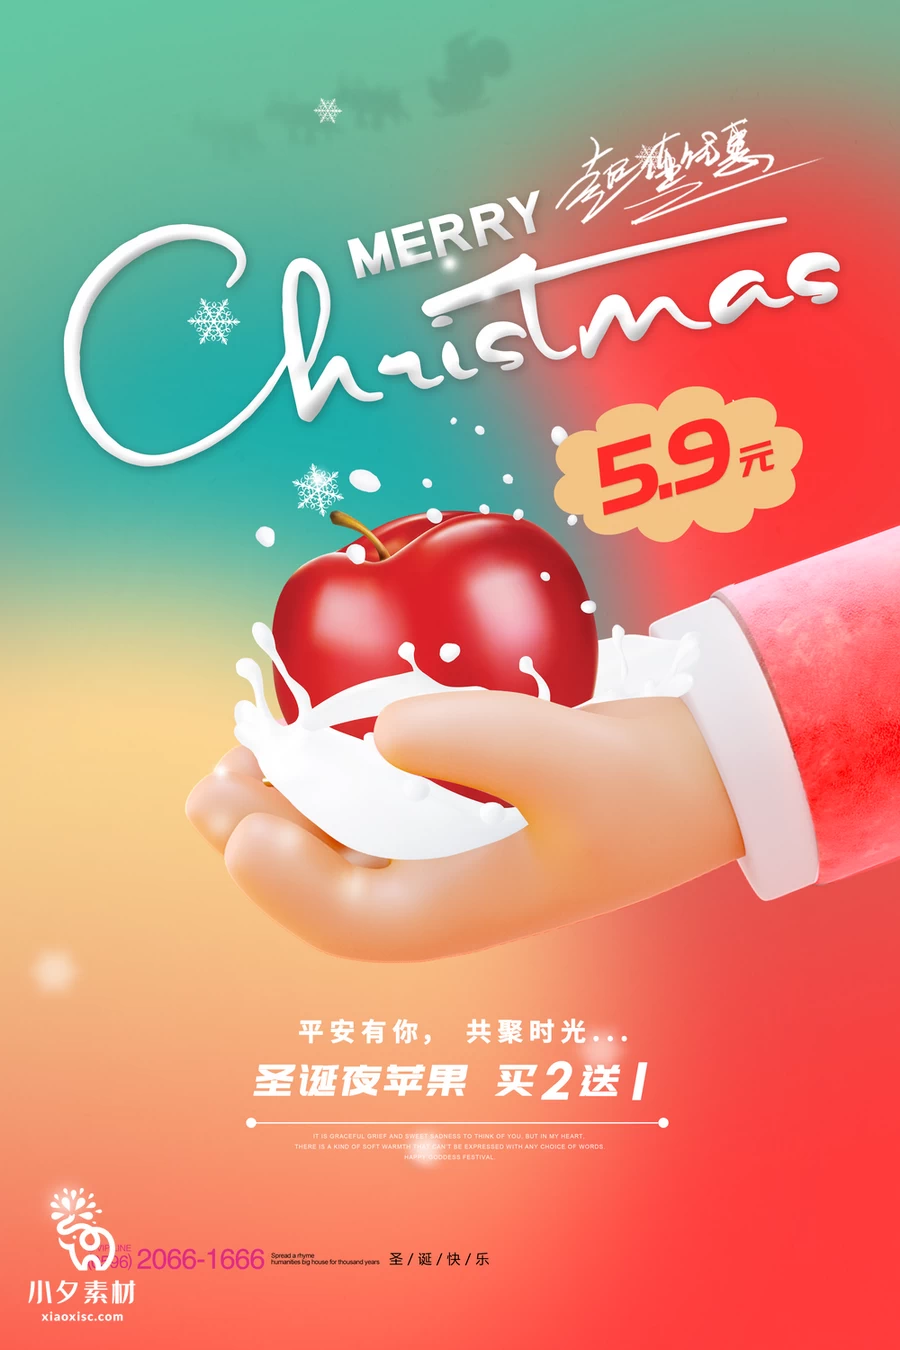 圣诞节节日节庆海报模板PSD分层设计素材【003】